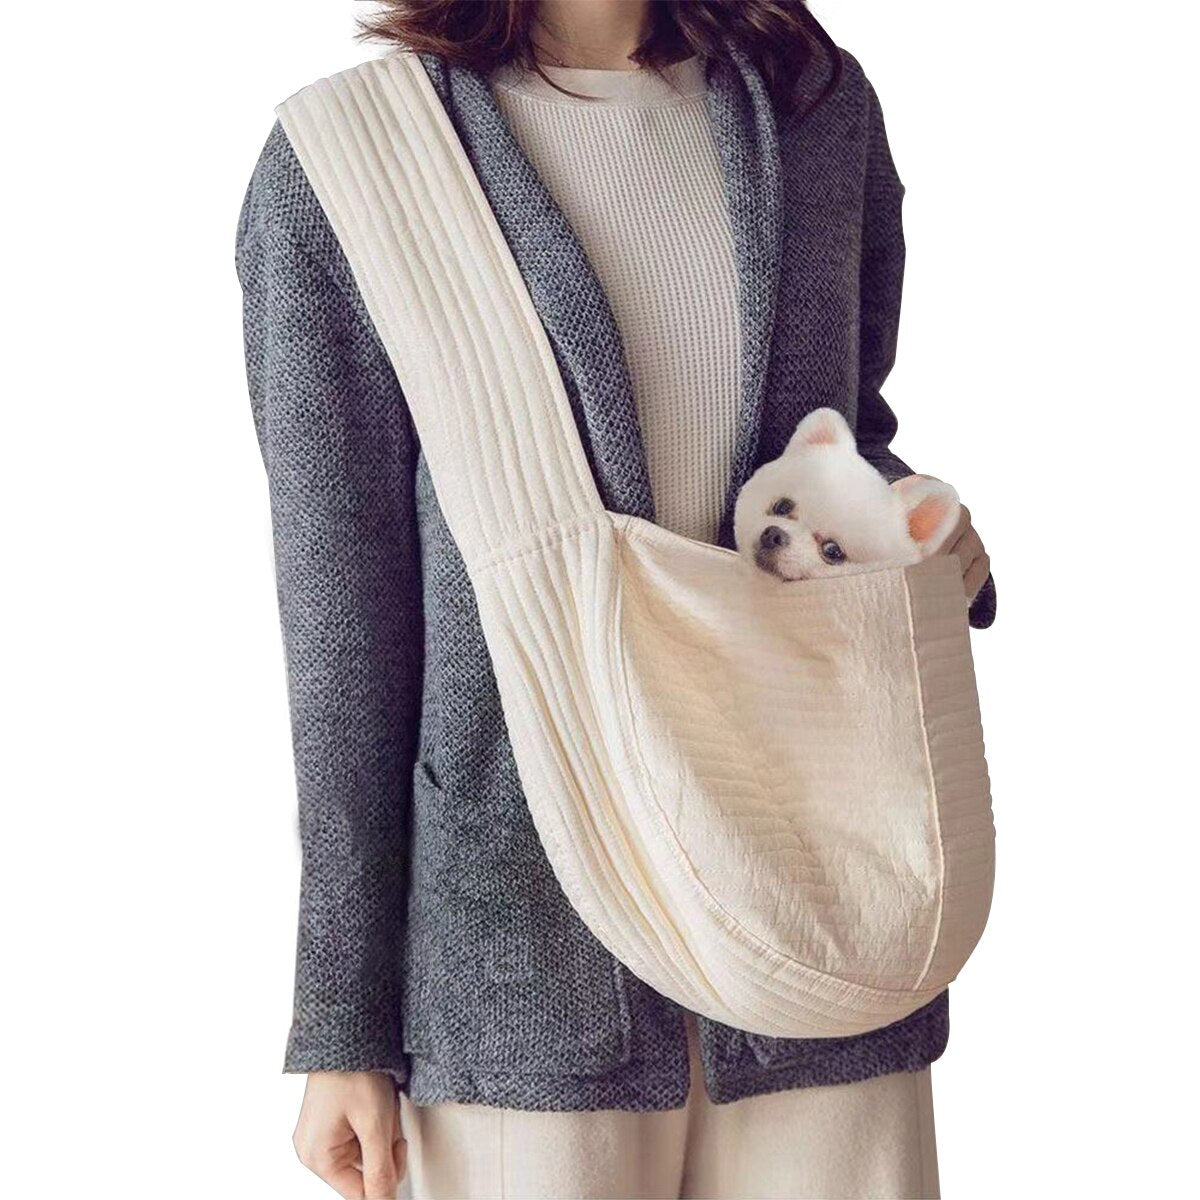 Handmade Pet Dog Carrier Outdoor Travel Handbag Canvas Single Shoulder Bag Sling Comfort Travel Tote Shoulder Bag Breathable  Large Capacity